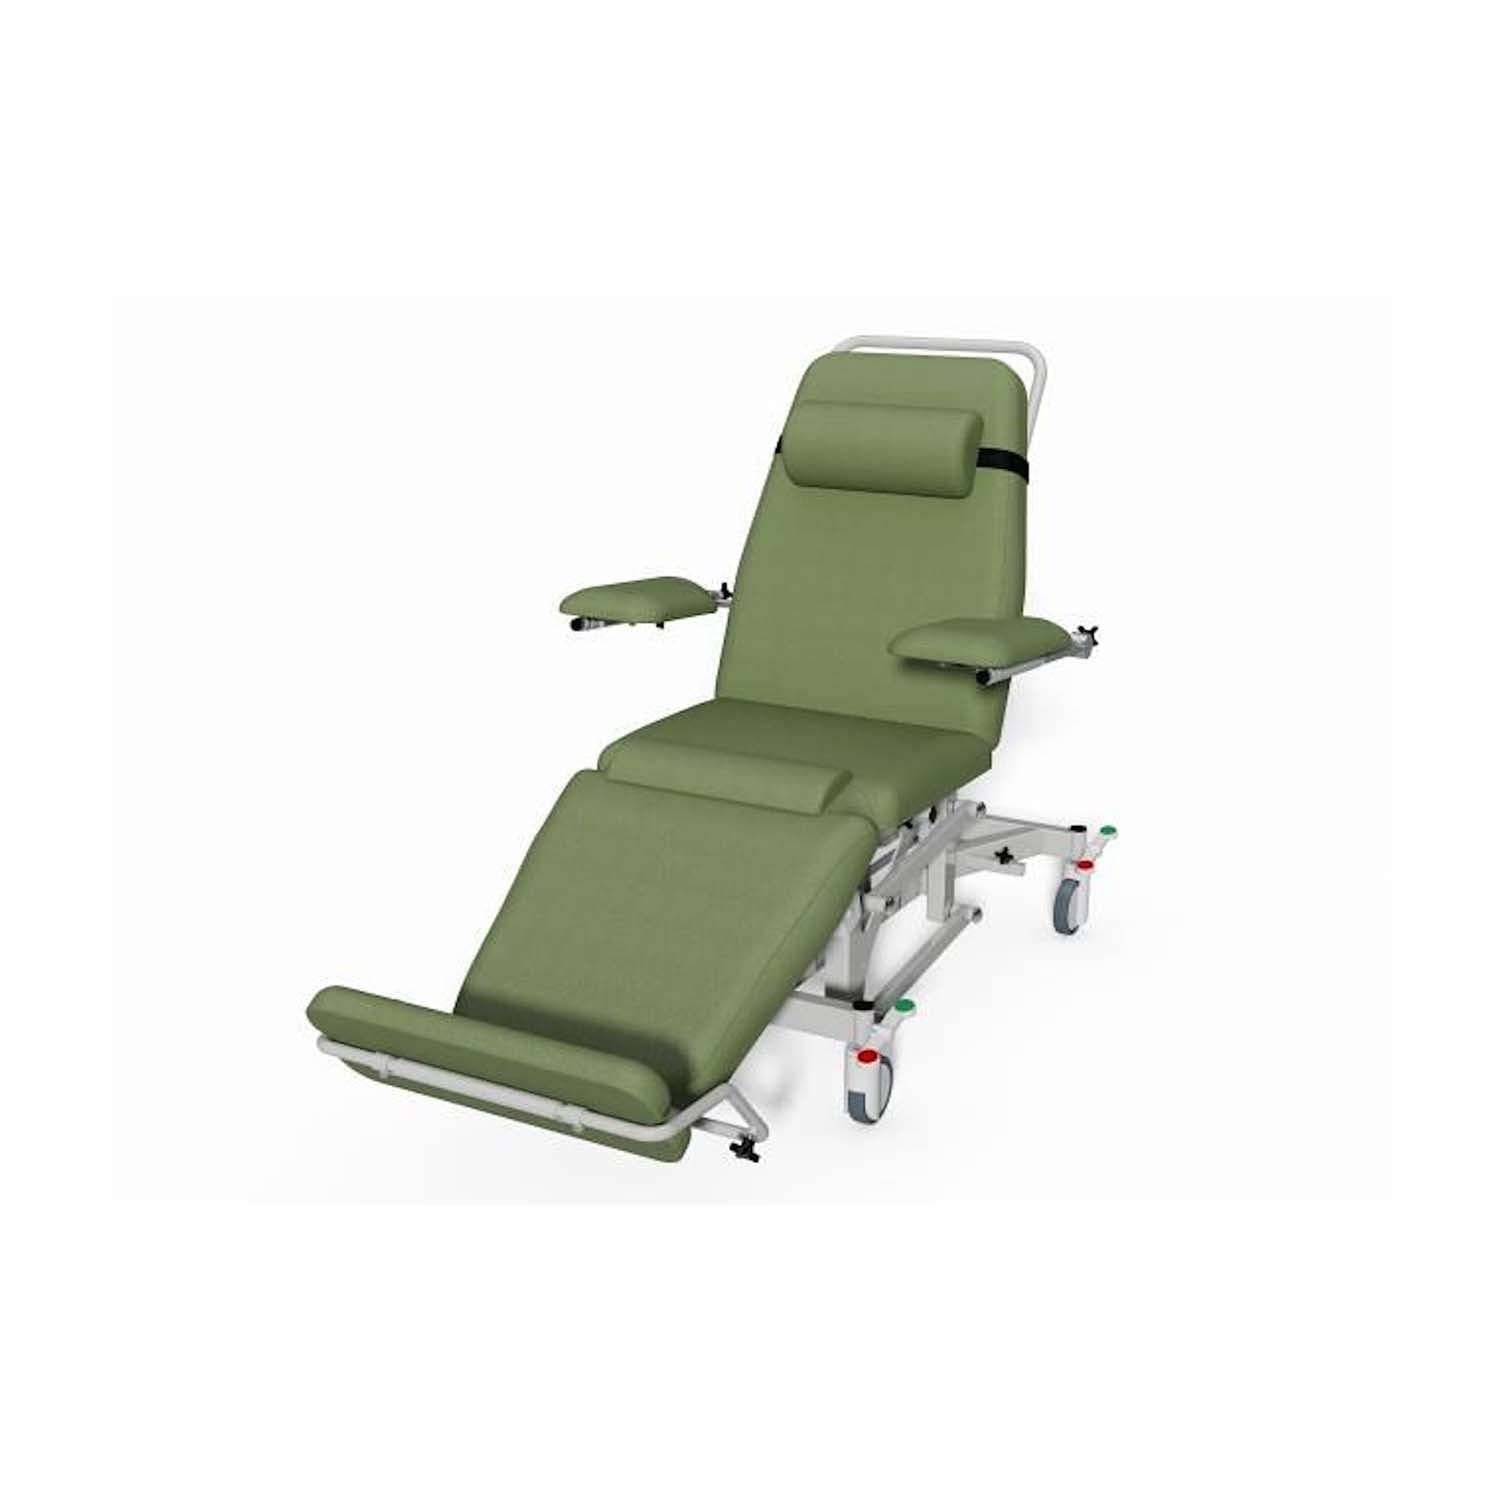 Plinth 2000 Model 93DYE Dialysis Chair | Column Lift | Wasabi